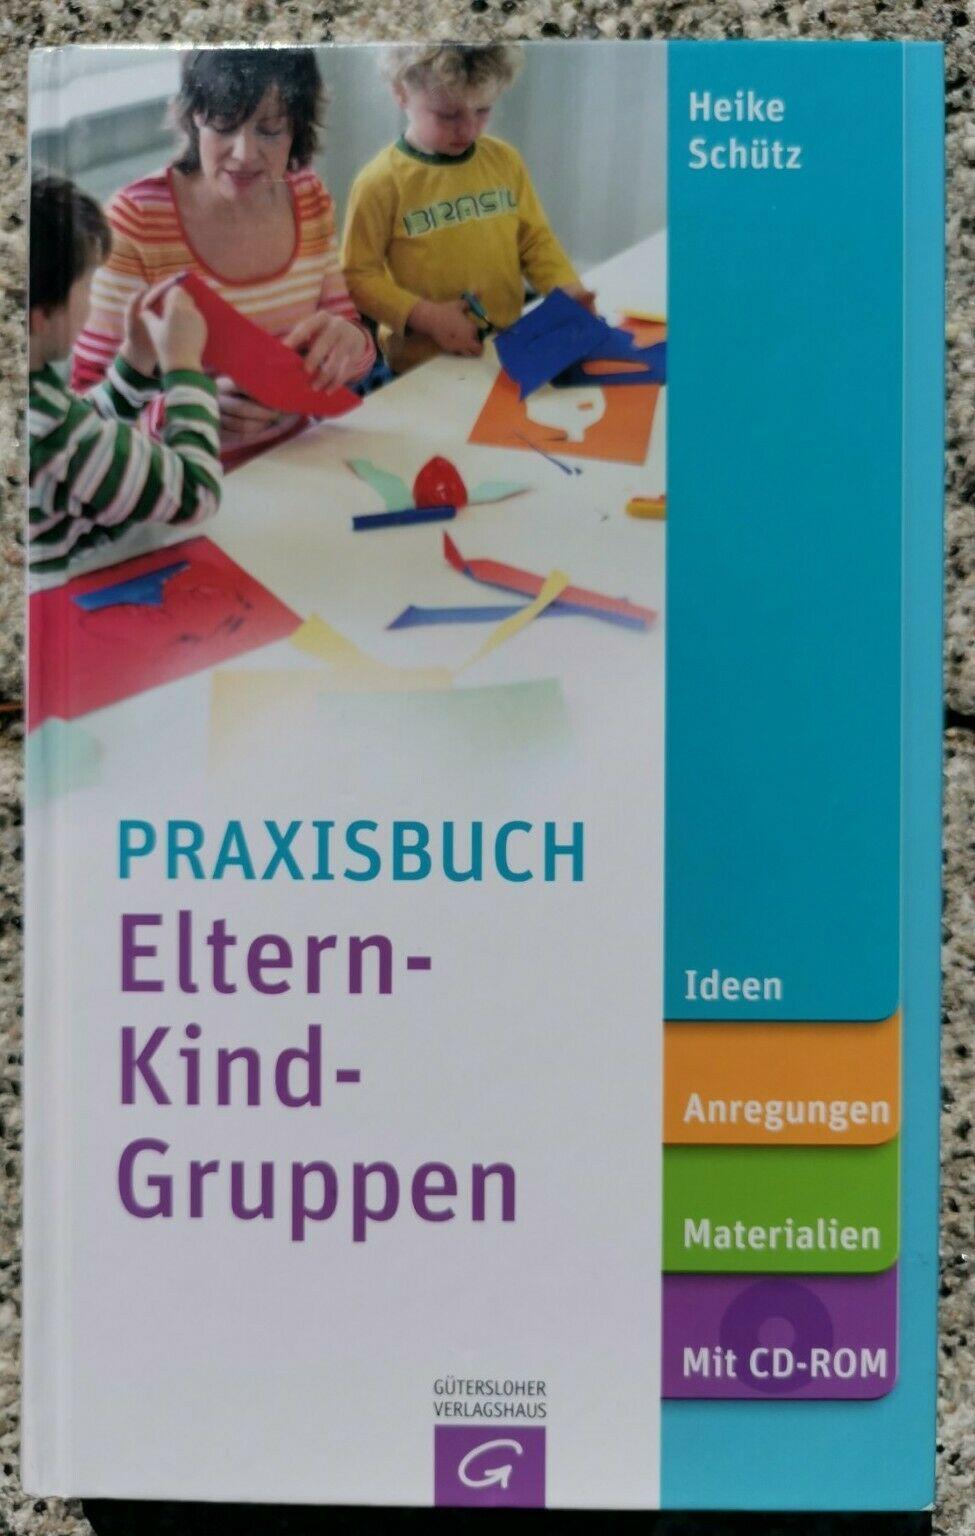 Praxisbuch Eltern-Kind-Gruppen: Ideen, Anregungen, Materialien. Sch�tz, Heike Jutta